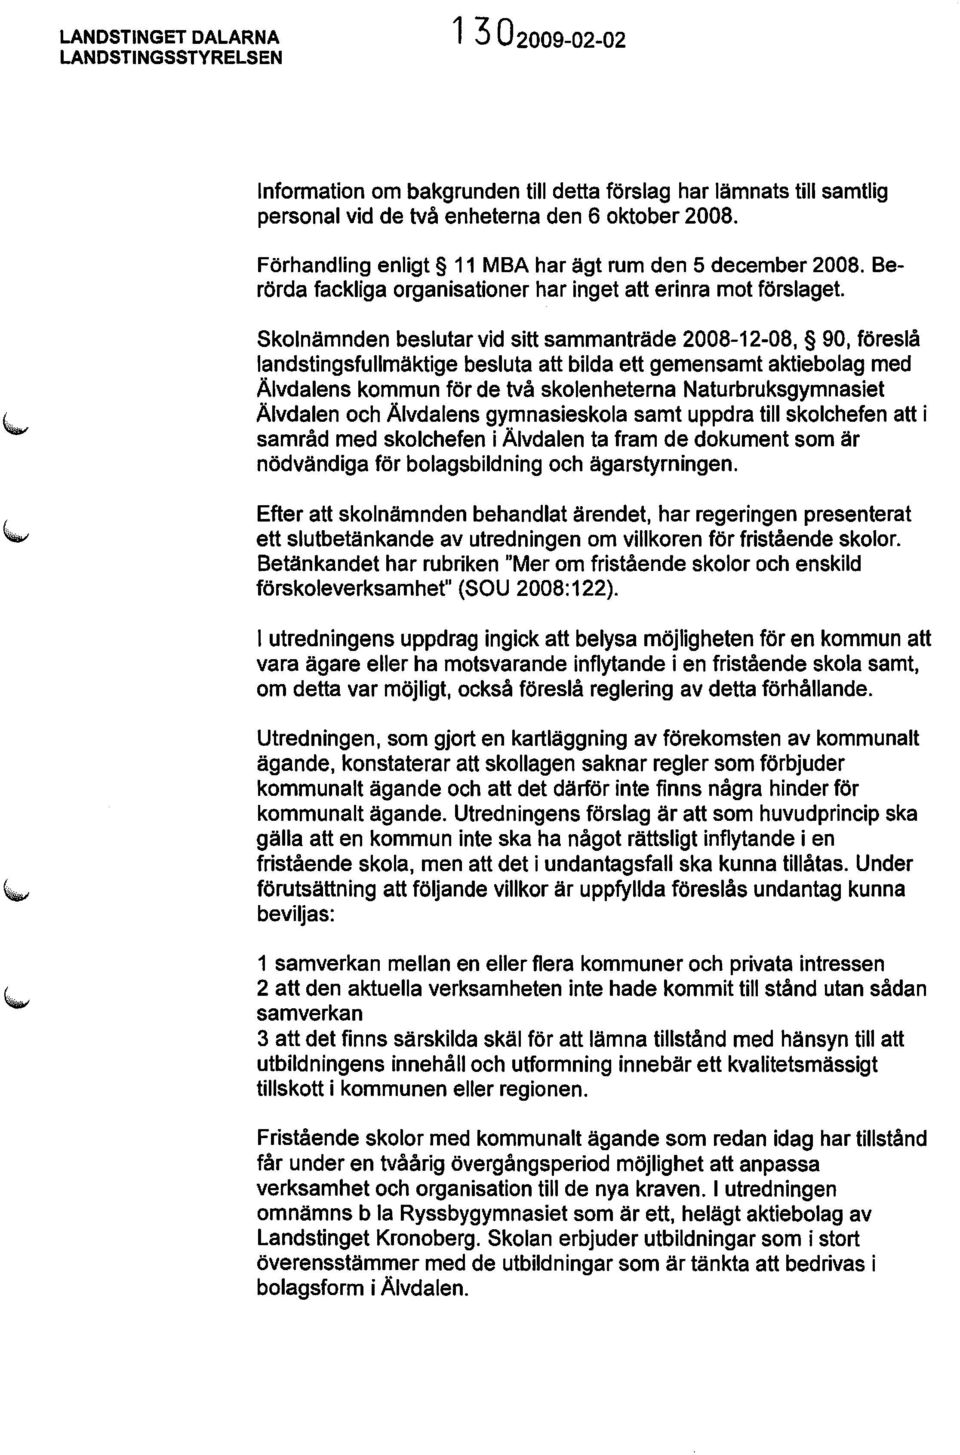 Skolnämnden beslutar vid sitt sammanträde 2008-12-08, 90, föreslå landstingsfullmäktige besluta att bilda ett gemensamt aktiebolag med Älvdalens kommun för de två skolenheterna Naturbruksgymnasiet